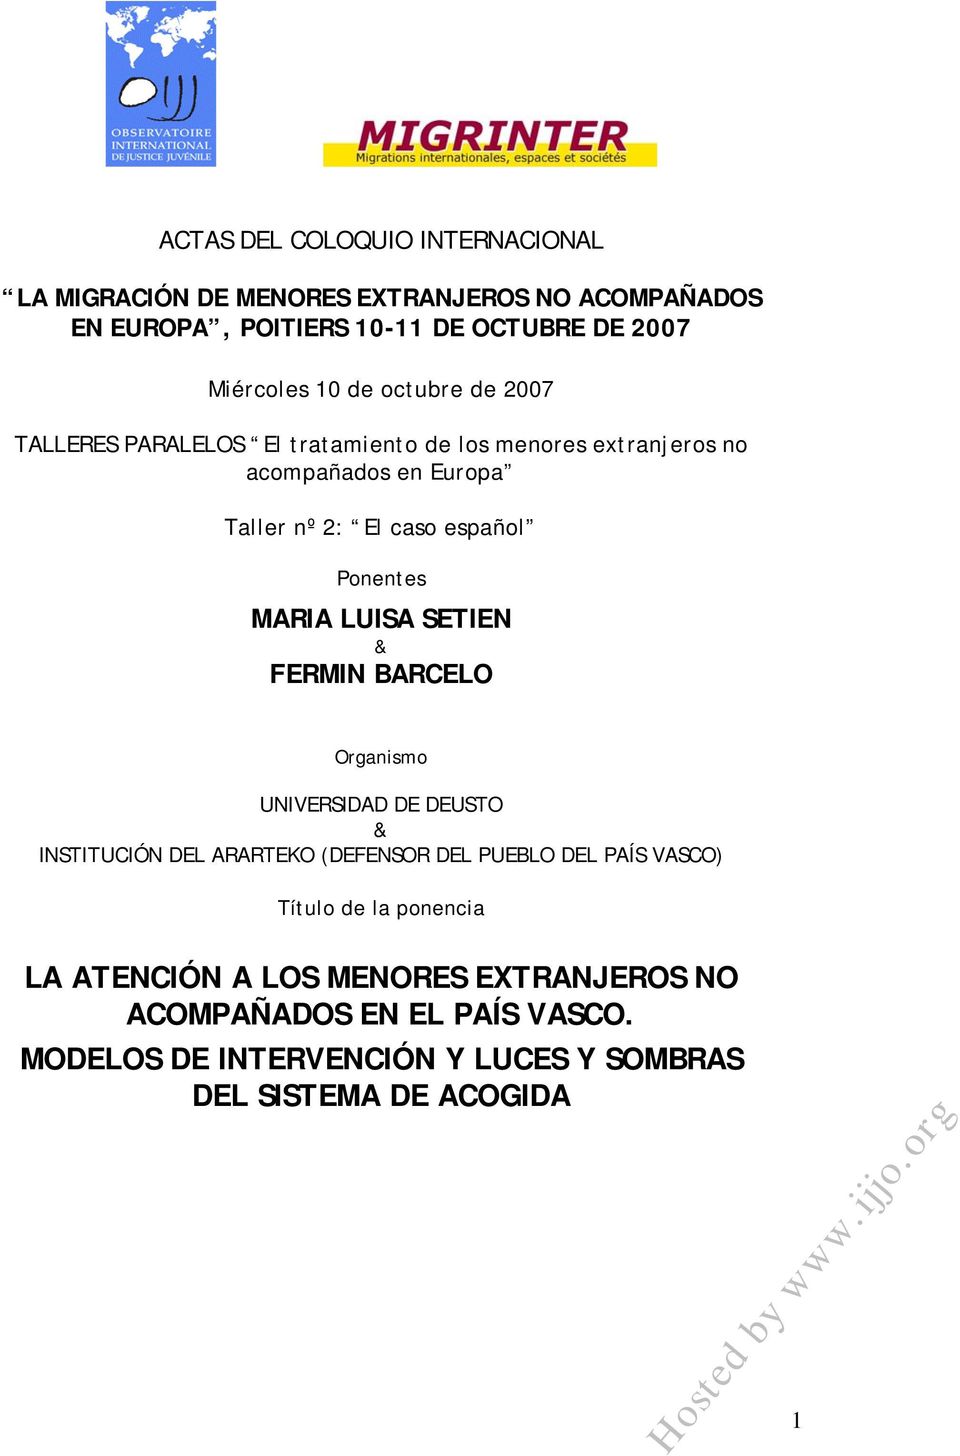 MARIA LUISA SETIEN & FERMIN BARCELO Organismo UNIVERSIDAD DE DEUSTO & INSTITUCIÓN DEL ARARTEKO (DEFENSOR DEL PUEBLO DEL PAÍS VASCO) Título de